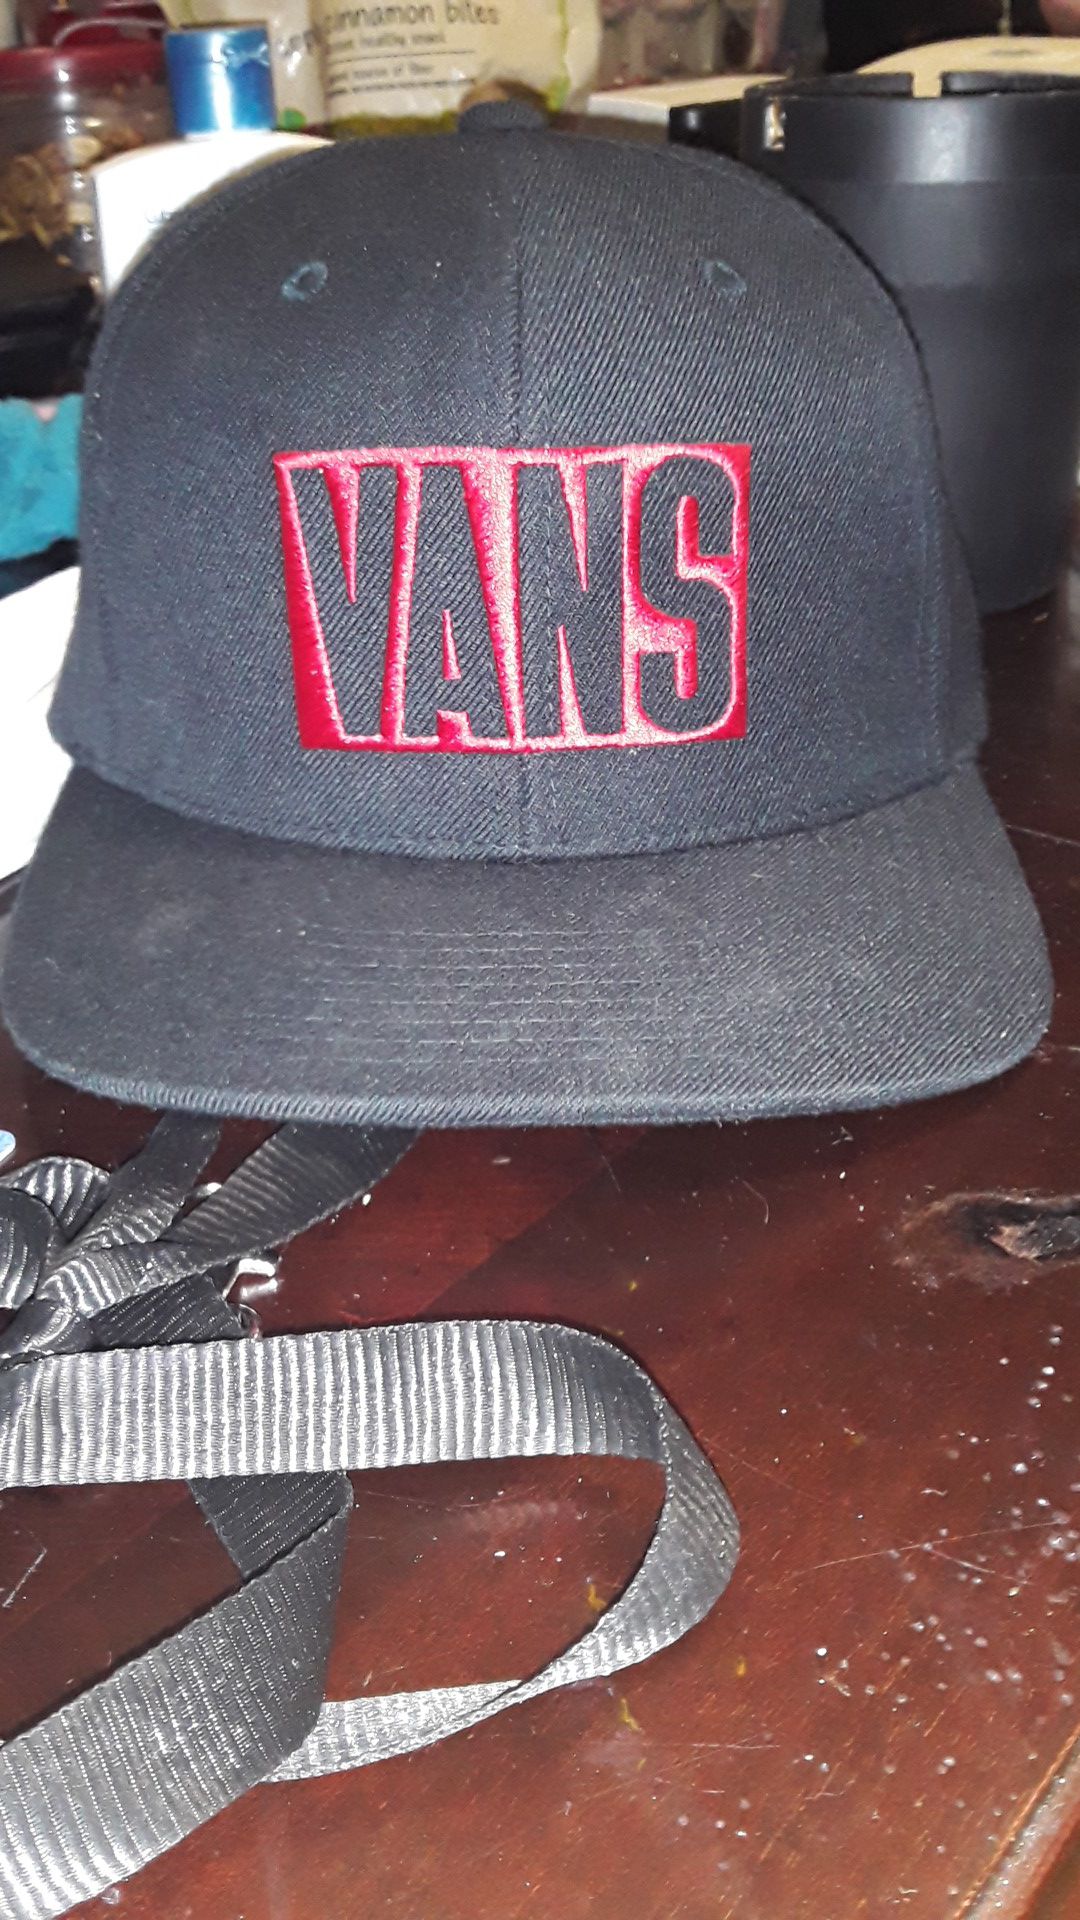 Van's hat